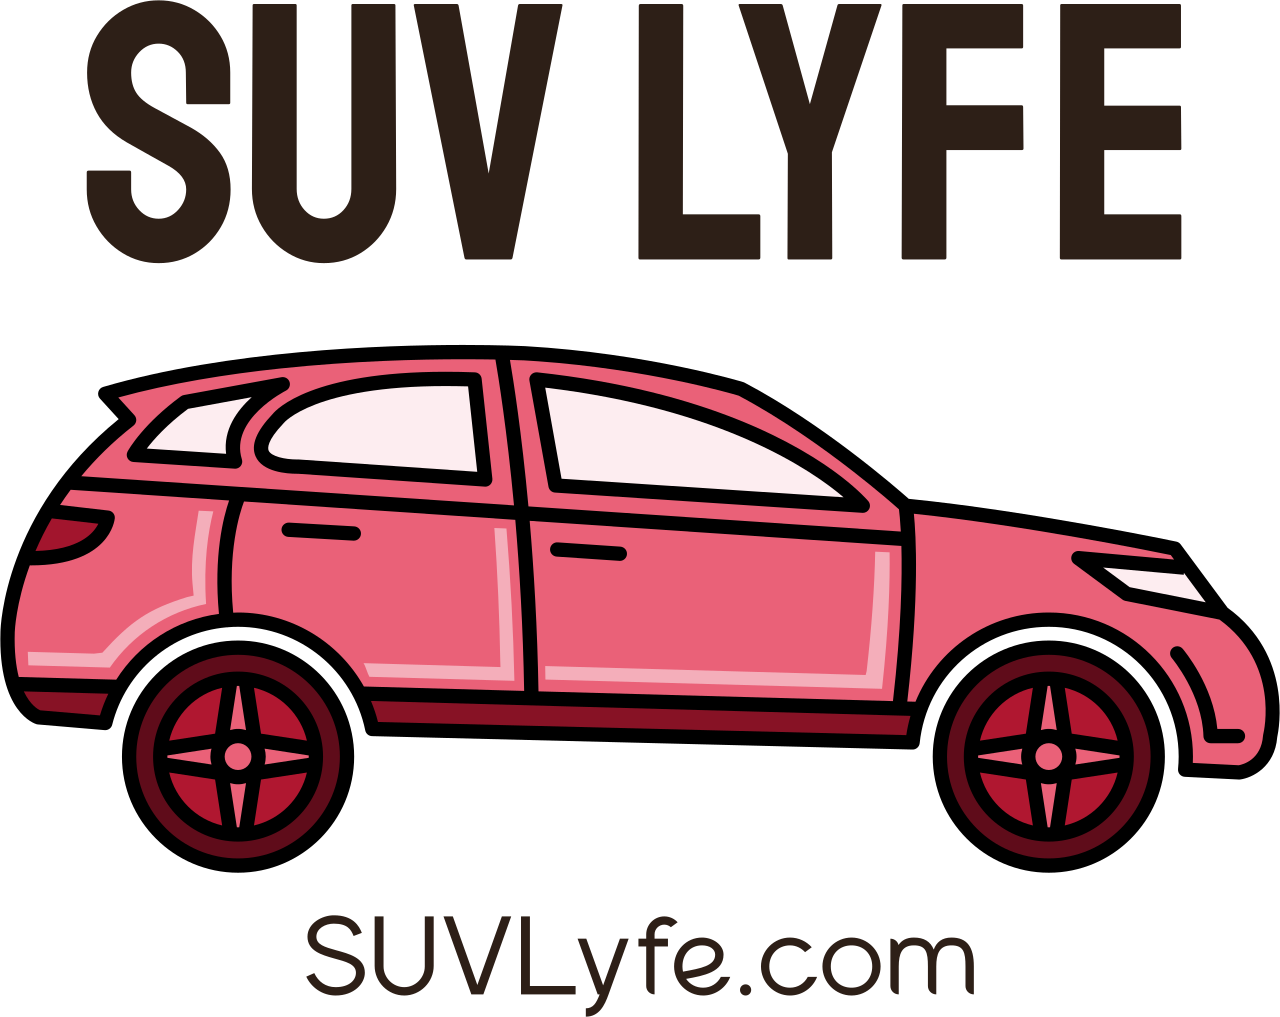 SUV LYFE's web page